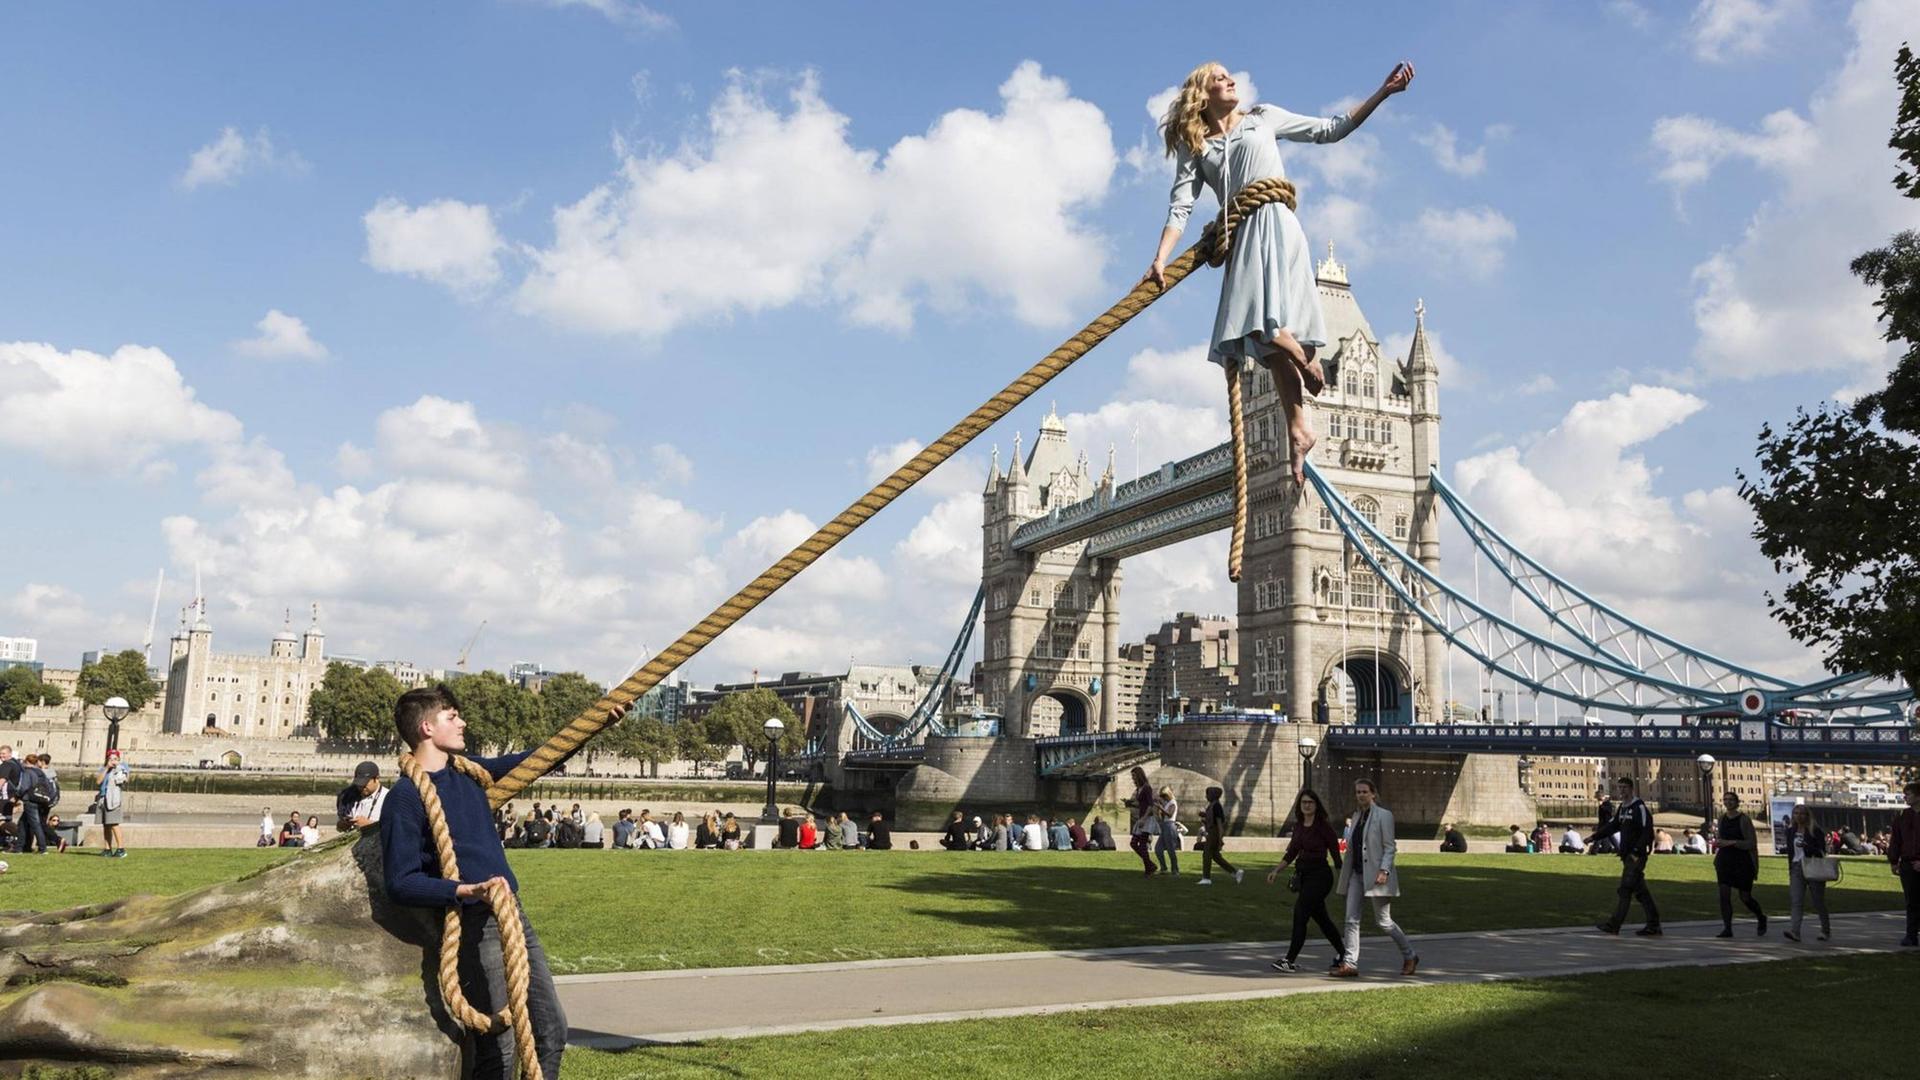 Besondere Vorgänge in London - zum Start des neuen Films von Tim Burton "Die Insel der besonderen Kinder" zeigt die Luftakrobatin Sally Miller zusammen mit Schauspieler Asa Butterfield die ungewöhnlichen Fähigkeiten der Figur Emma Bloom.